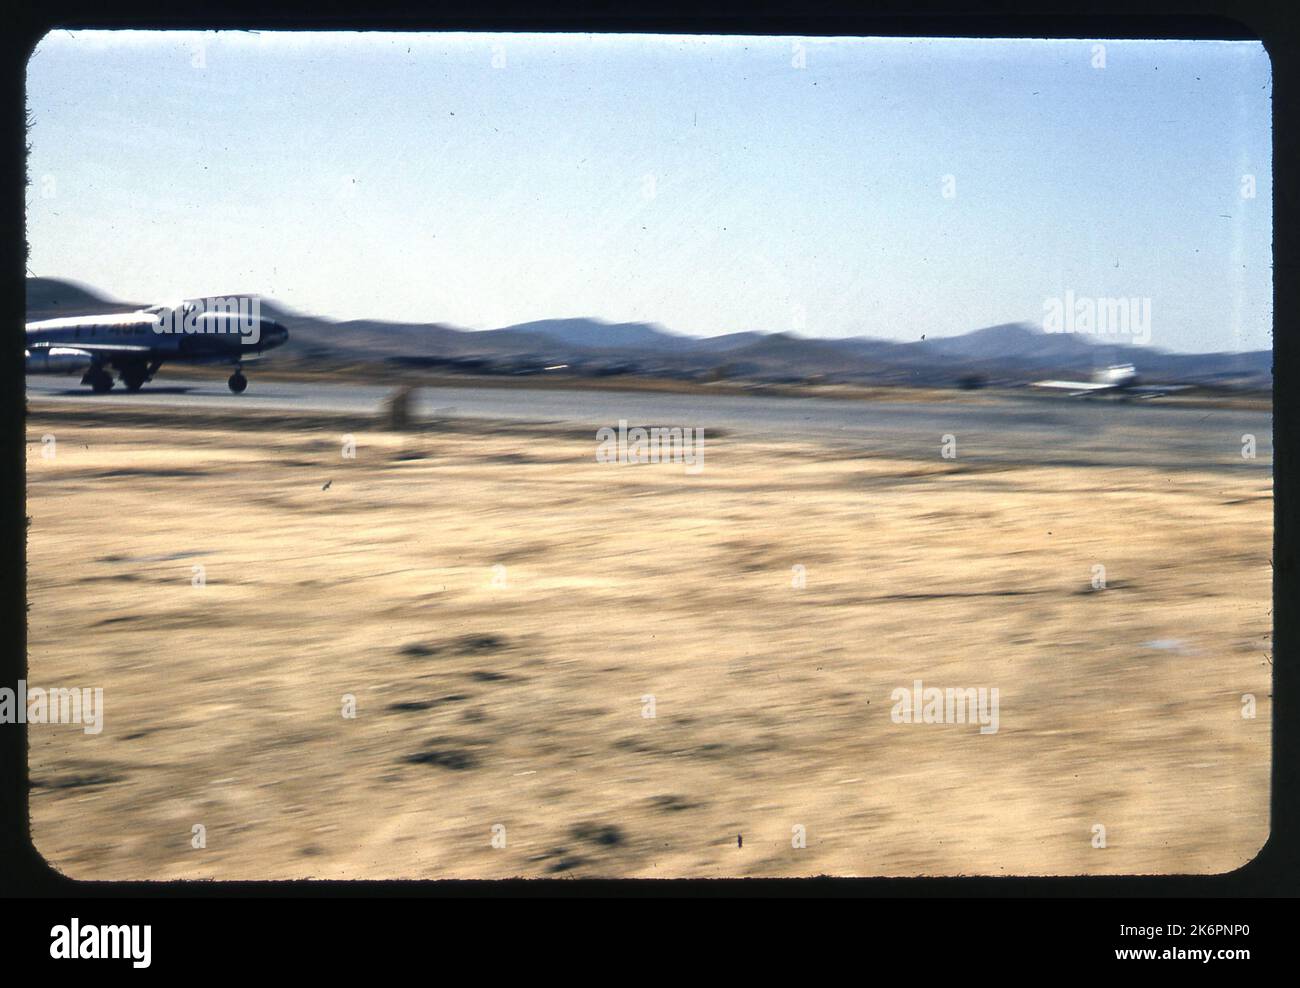 Vista laterale destra di un Lockheed F-80 Shooting Star che tassia lungo la pista, da qualche parte in Corea. La coda non è visibile, ma il numero di ronzio, FT-462, può essere visto. Un'immagine sfocata di un altro aereo appare a destra dell'immagine. Foto Stock